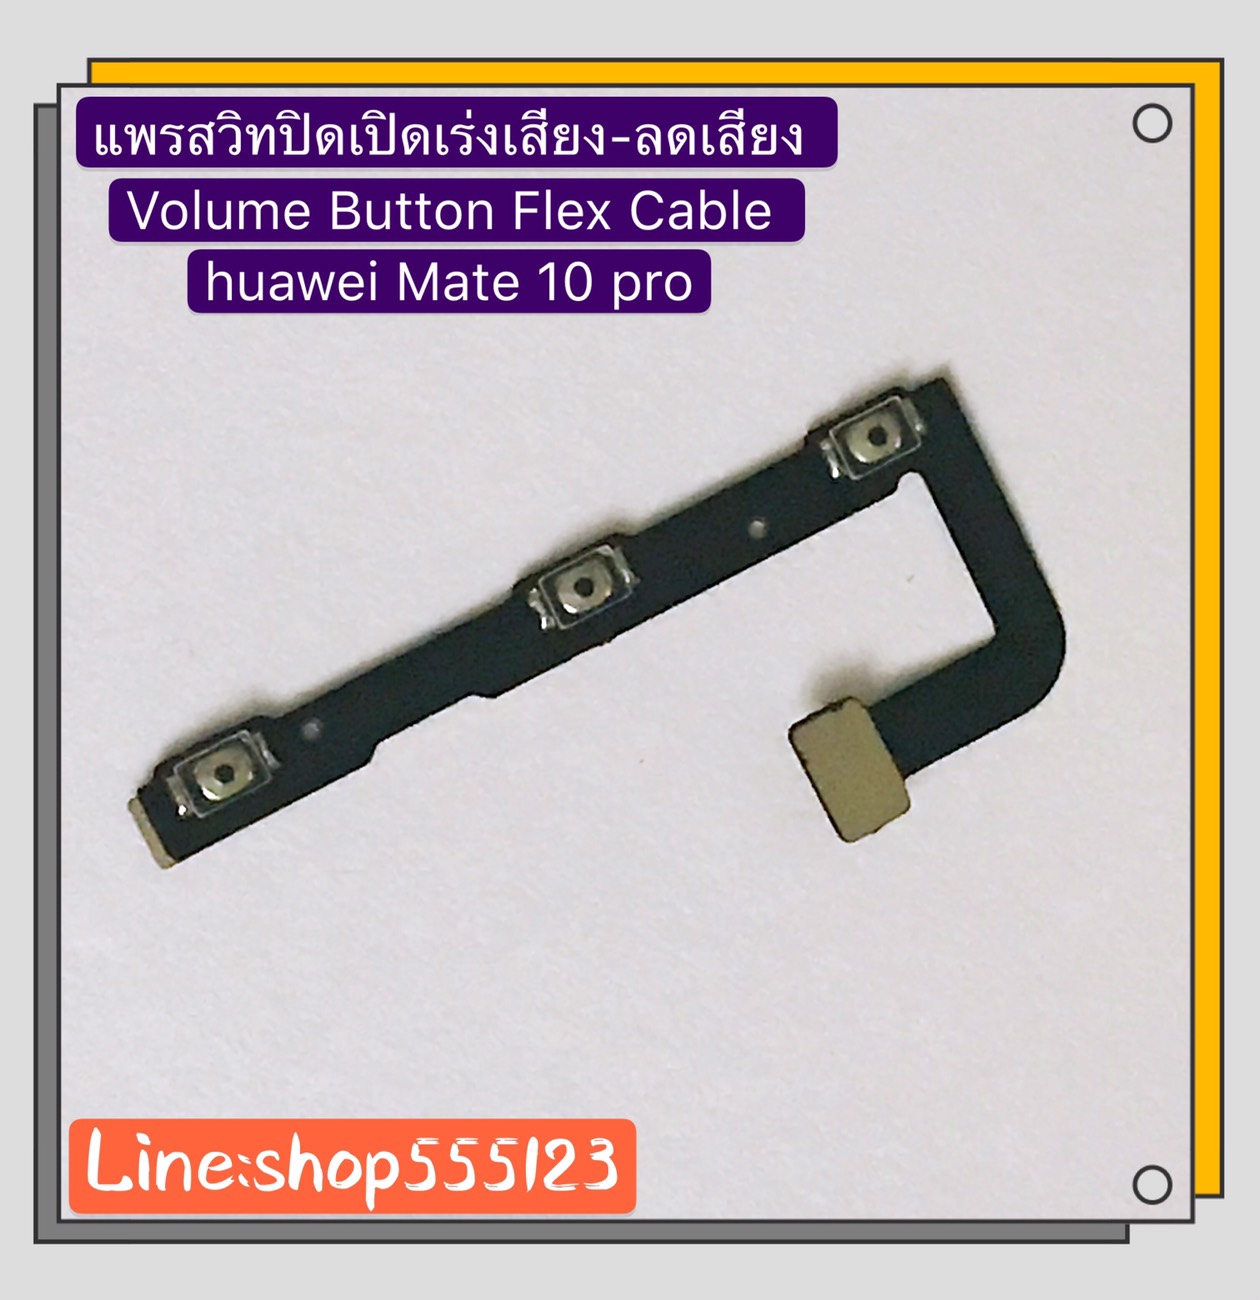 แพรสวิท ปิด-เปิด ( PCB on-off ) Huawei Mate 20 Pro / Mate 20 / Mate 10 Pro สี สีดำ สี สีดำรูปแบบรุ่นที่ีรองรับ แพรสวิท ปิด-เปิด ( PCB on-off ) Huawei Mate 10 Pro